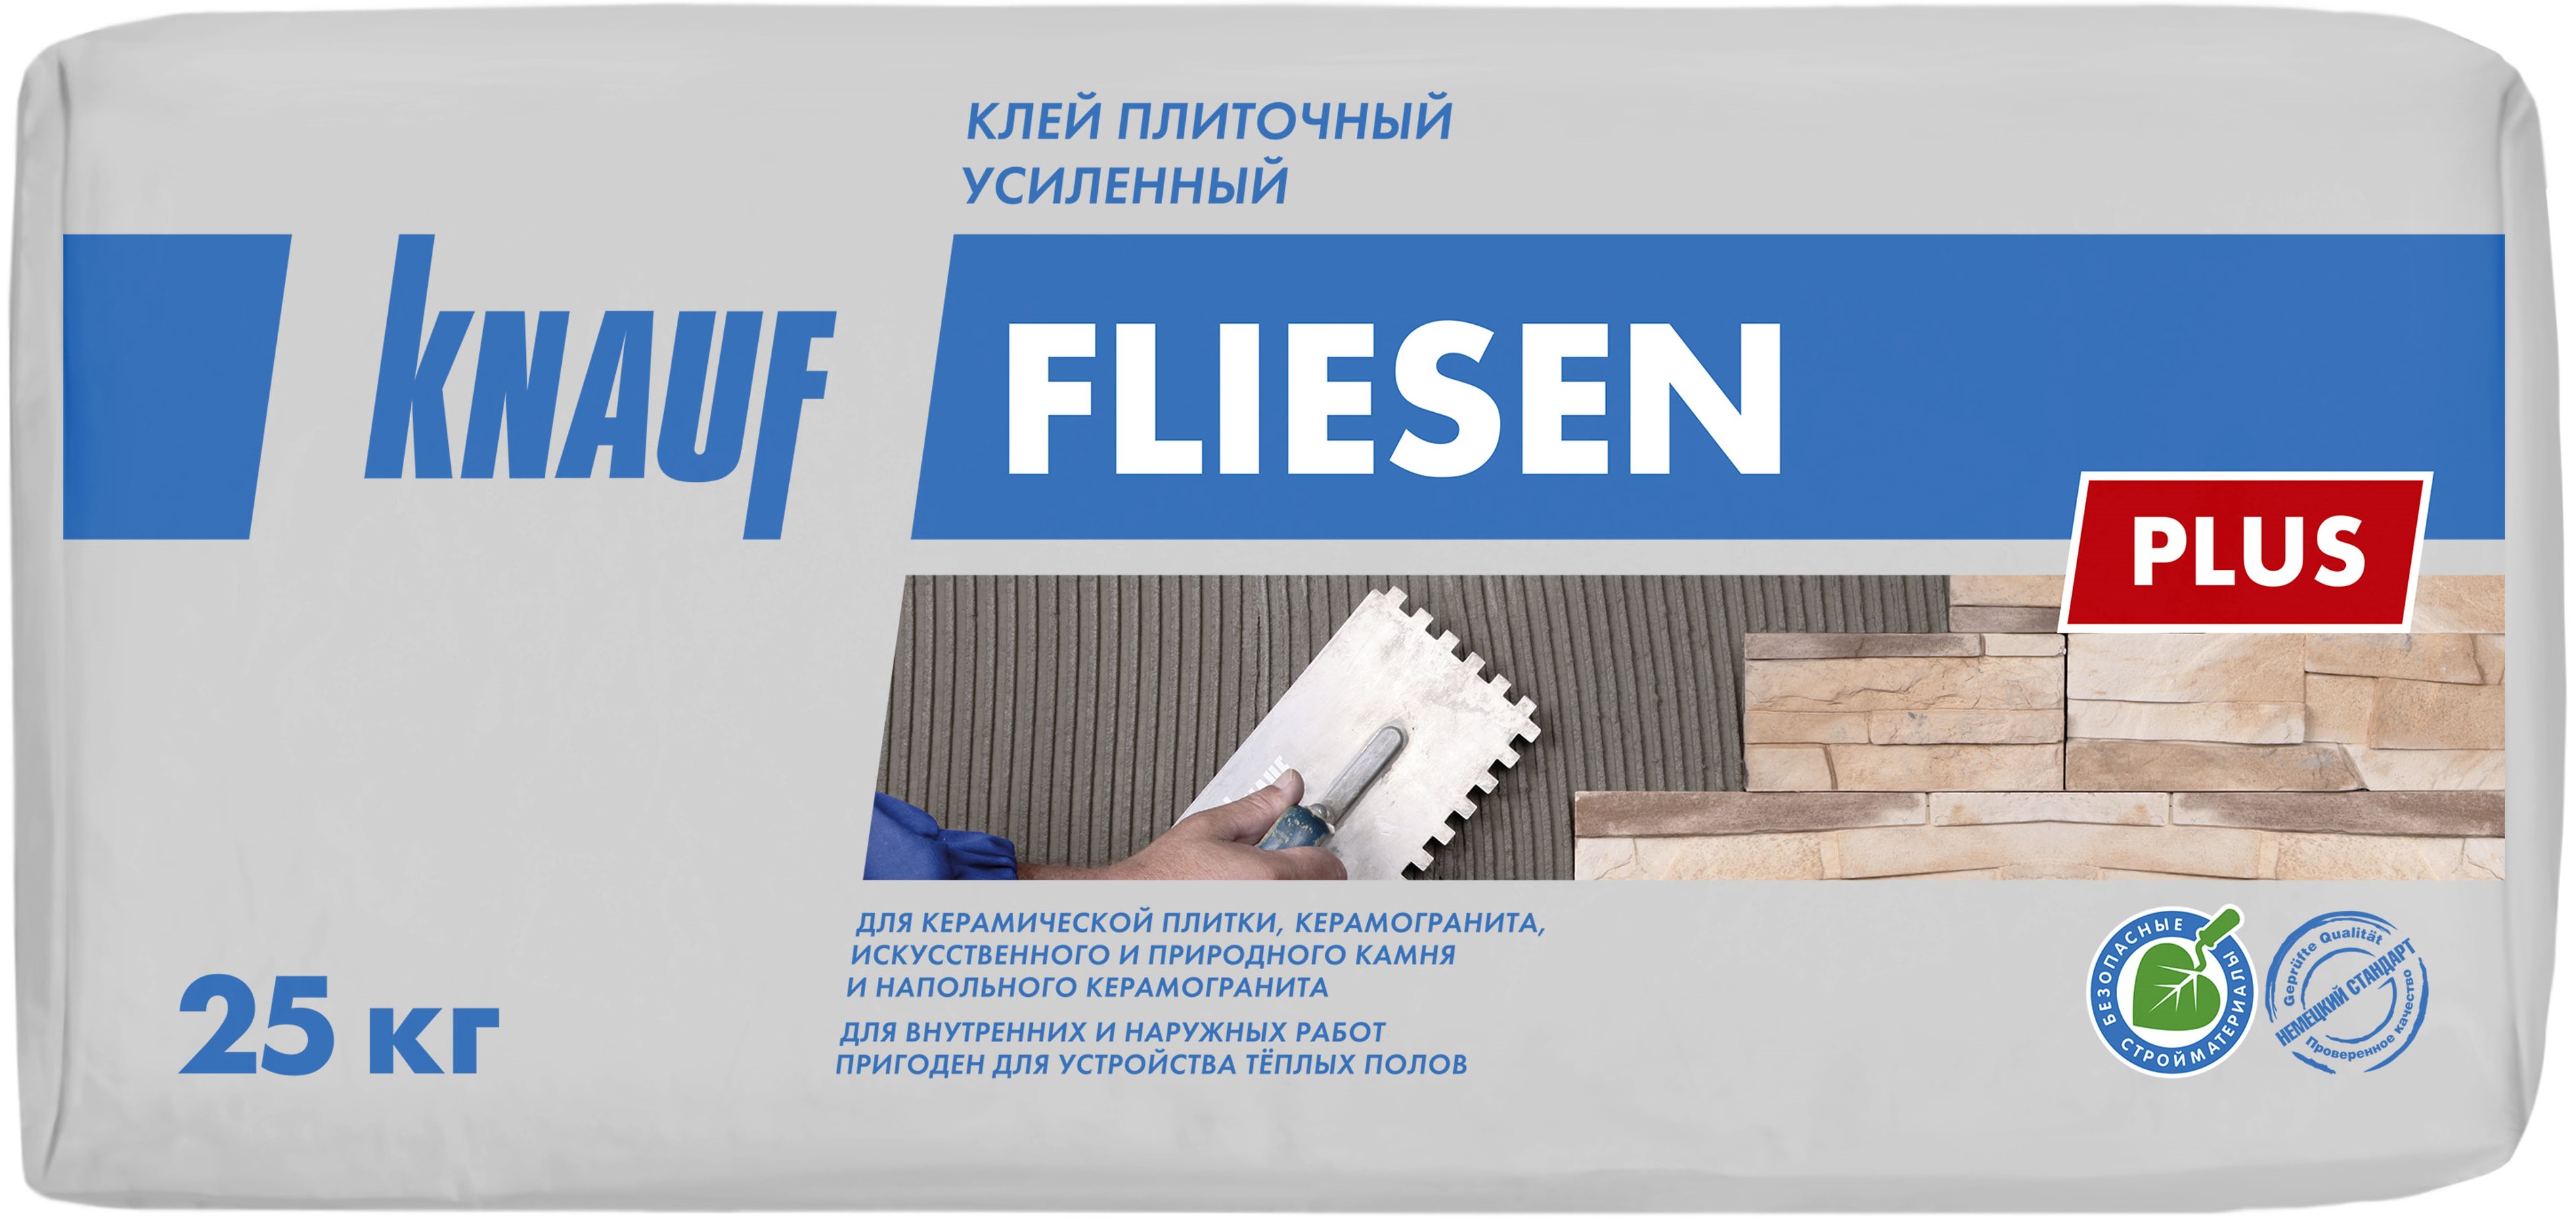 Клей для плитки Knauf Флизен Плюс усиленный 25 кг, цена —  в .